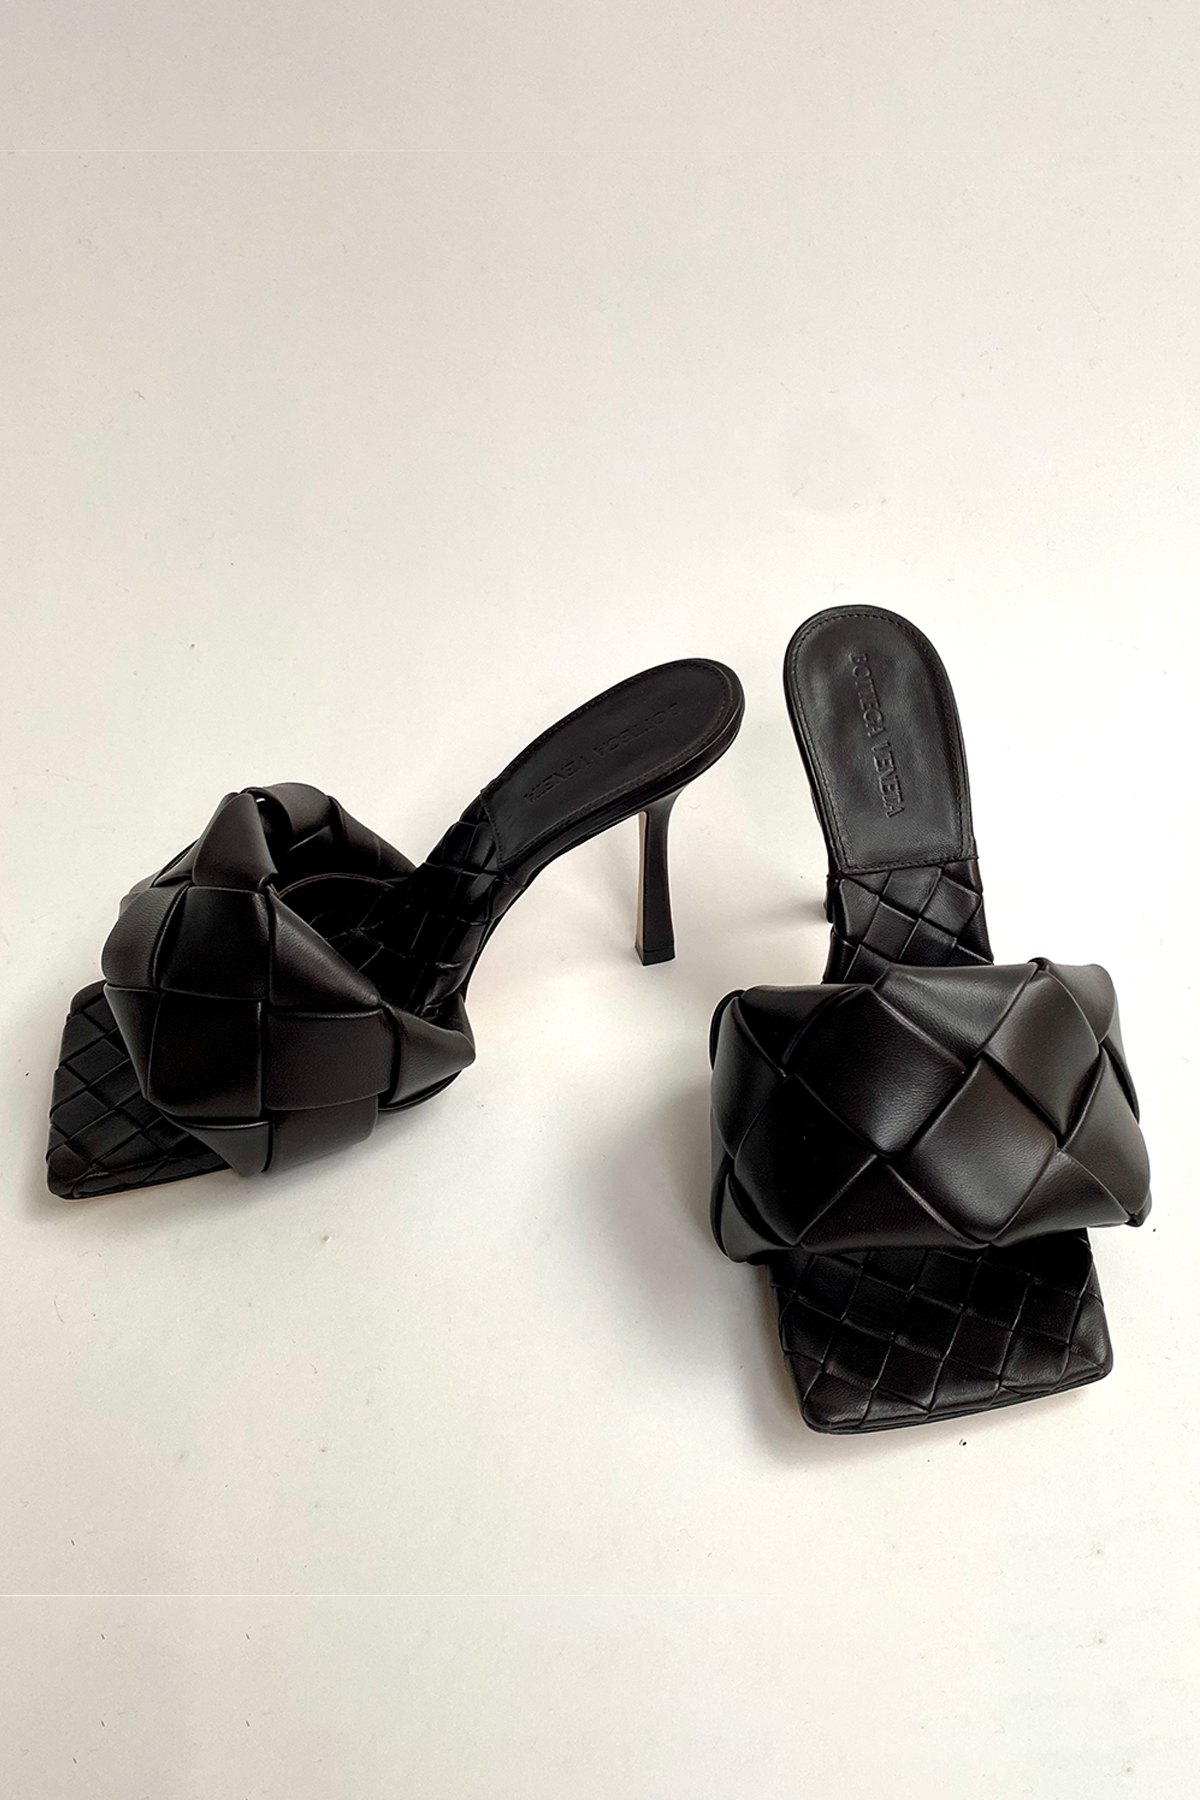 Bottega Veneta Heels - Size 38,5 W. Box